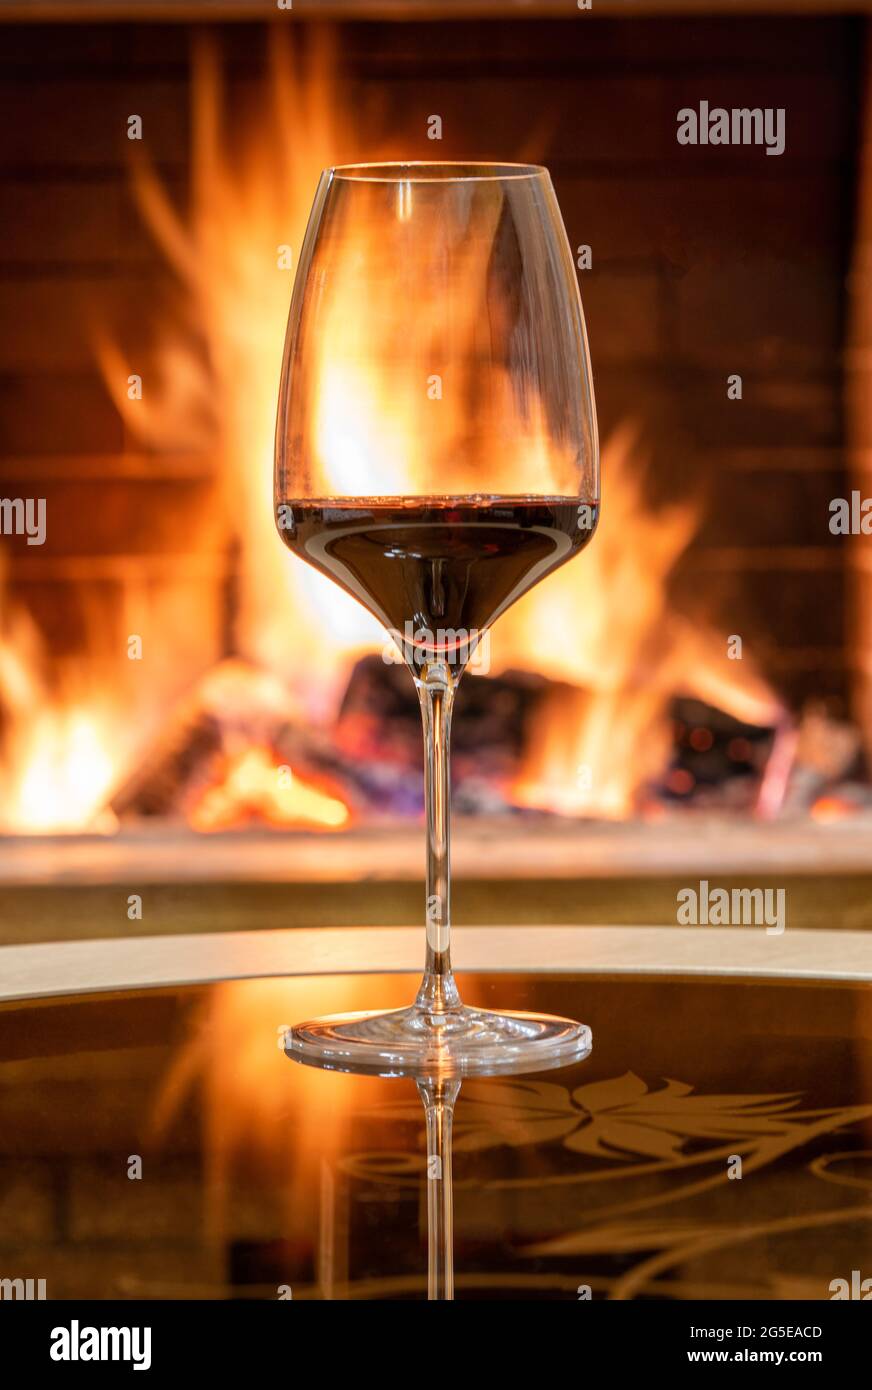 Gemütliche Kamin-Szene und ein Glas Rotwein, Spiegelung von einem Feuer auf einem Glastisch. Stockfoto